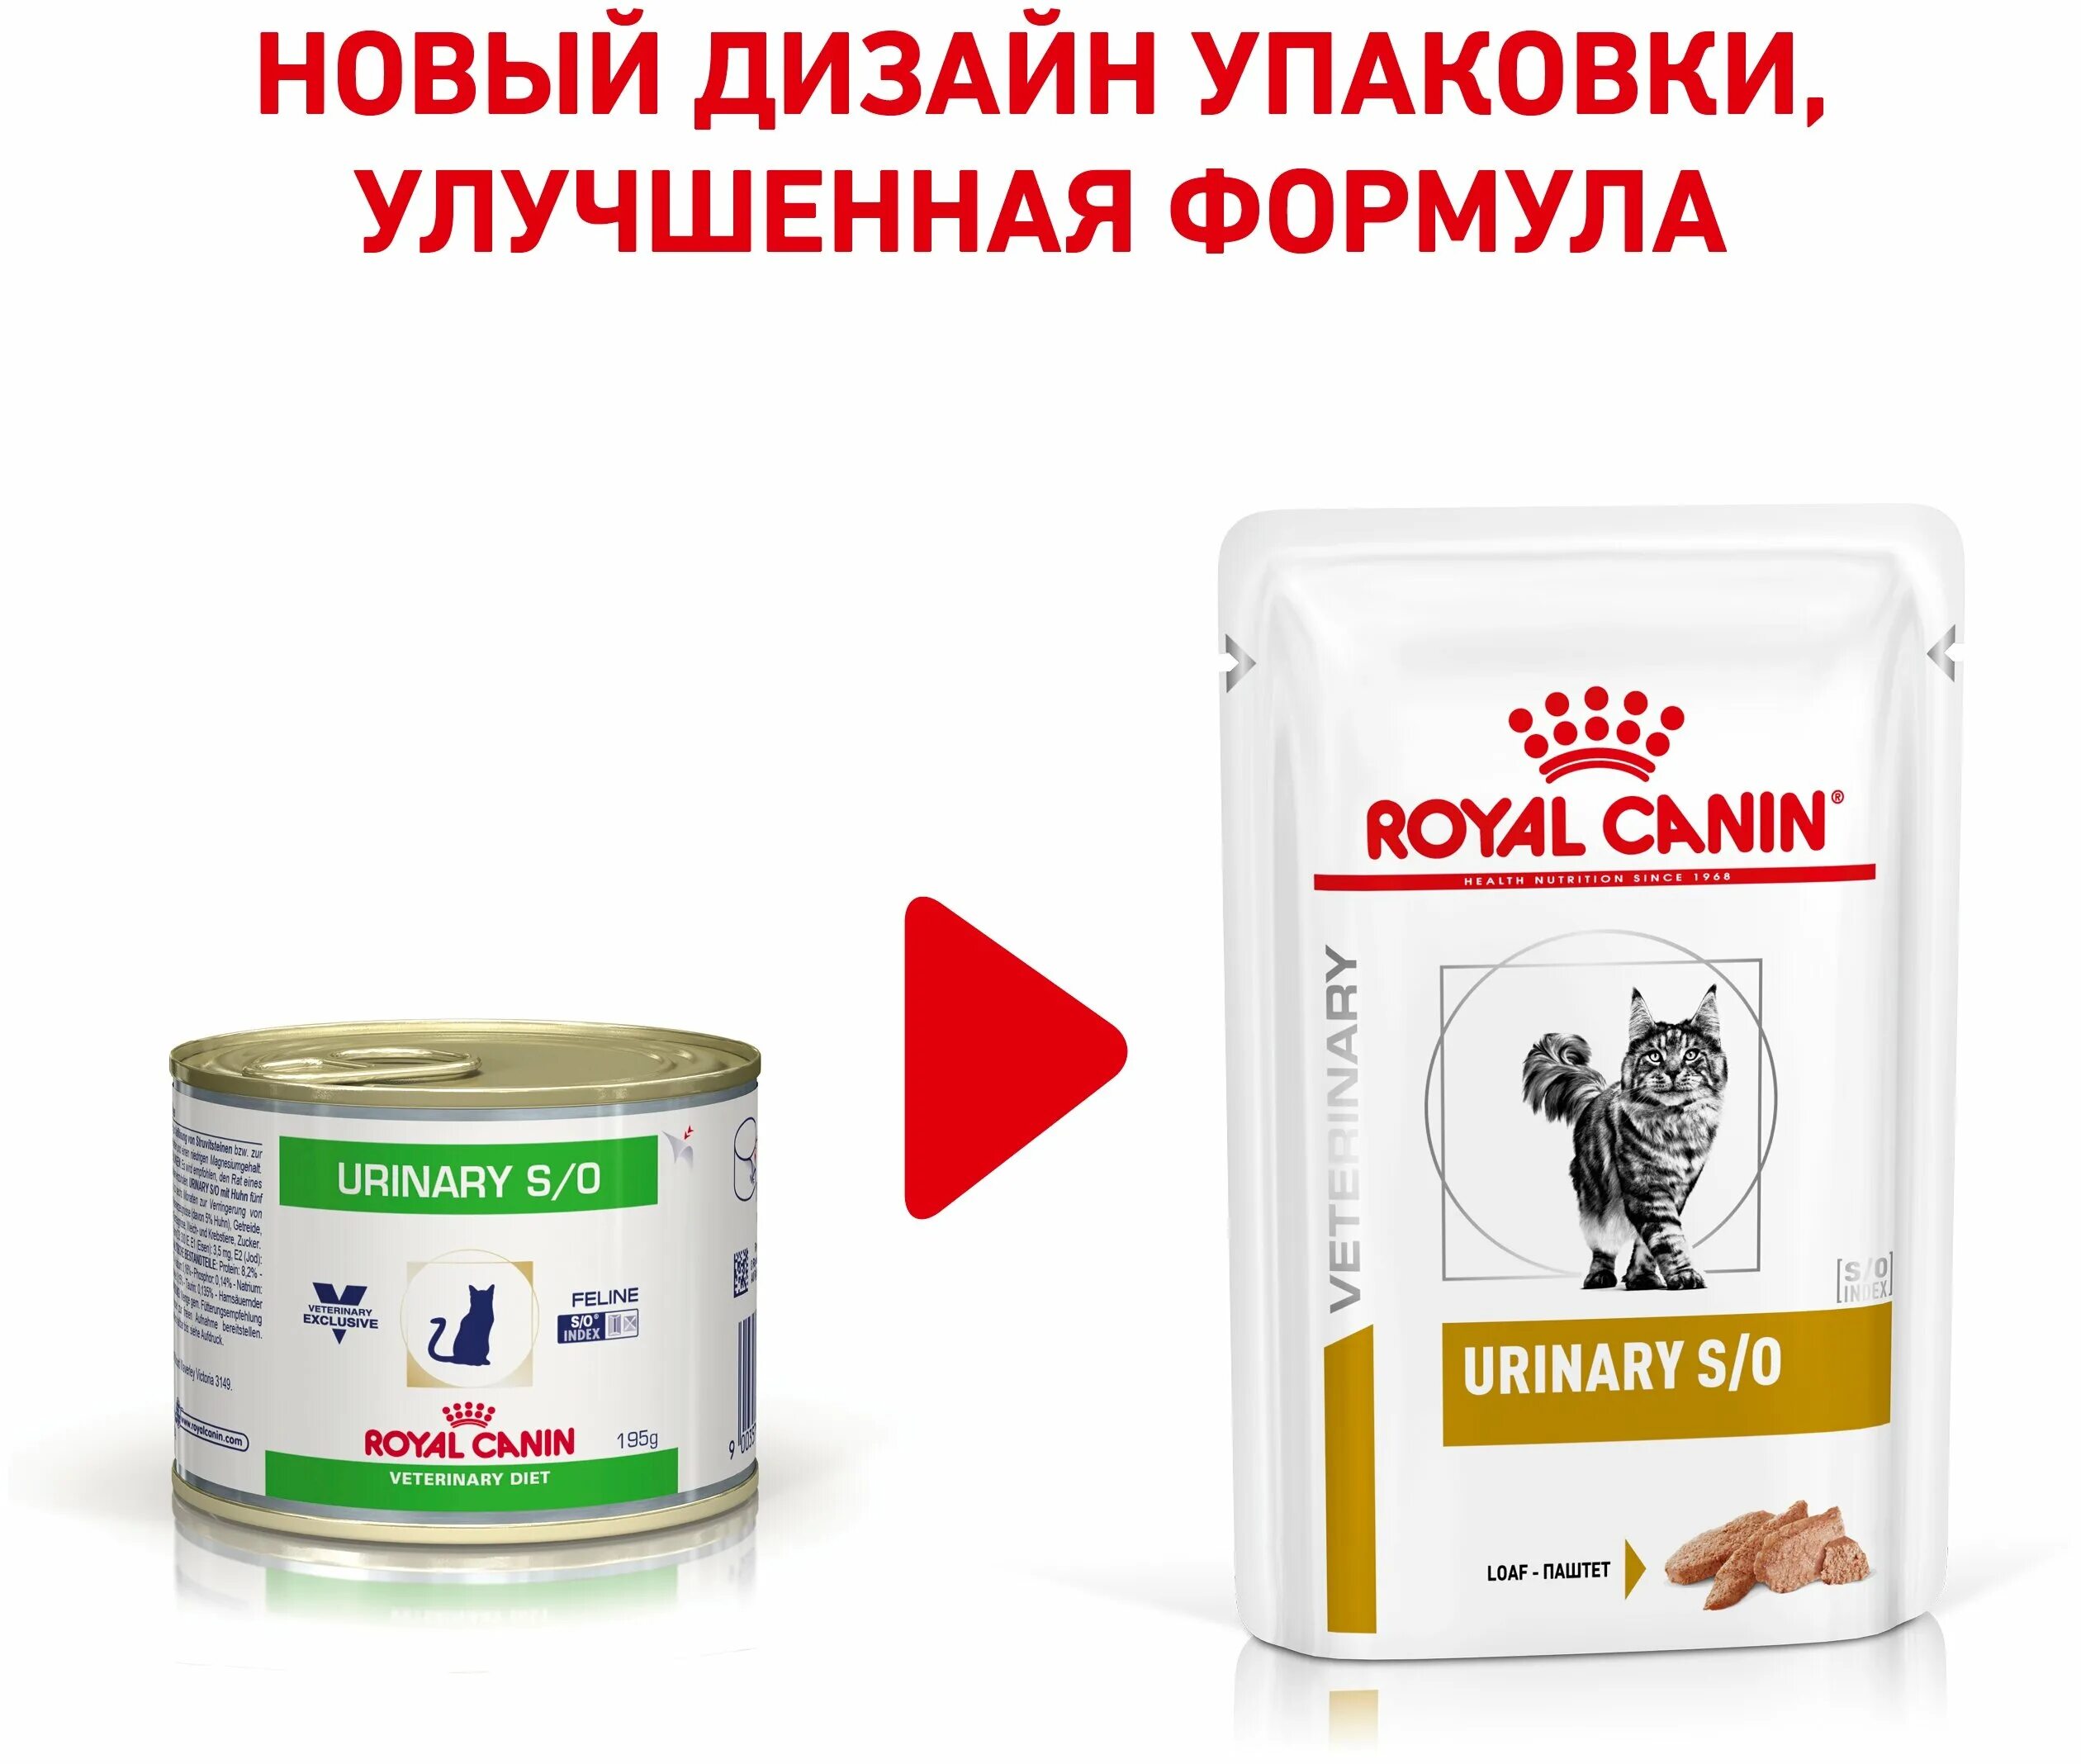 Royal canin для кошек мкб. Royal Canin Urinary s\o. Роял Канин Urinary s/o для кошек. Royal Canin Urinary s/o паштет для кошек. Royal Canin Urinary s/o для кошек влажный.